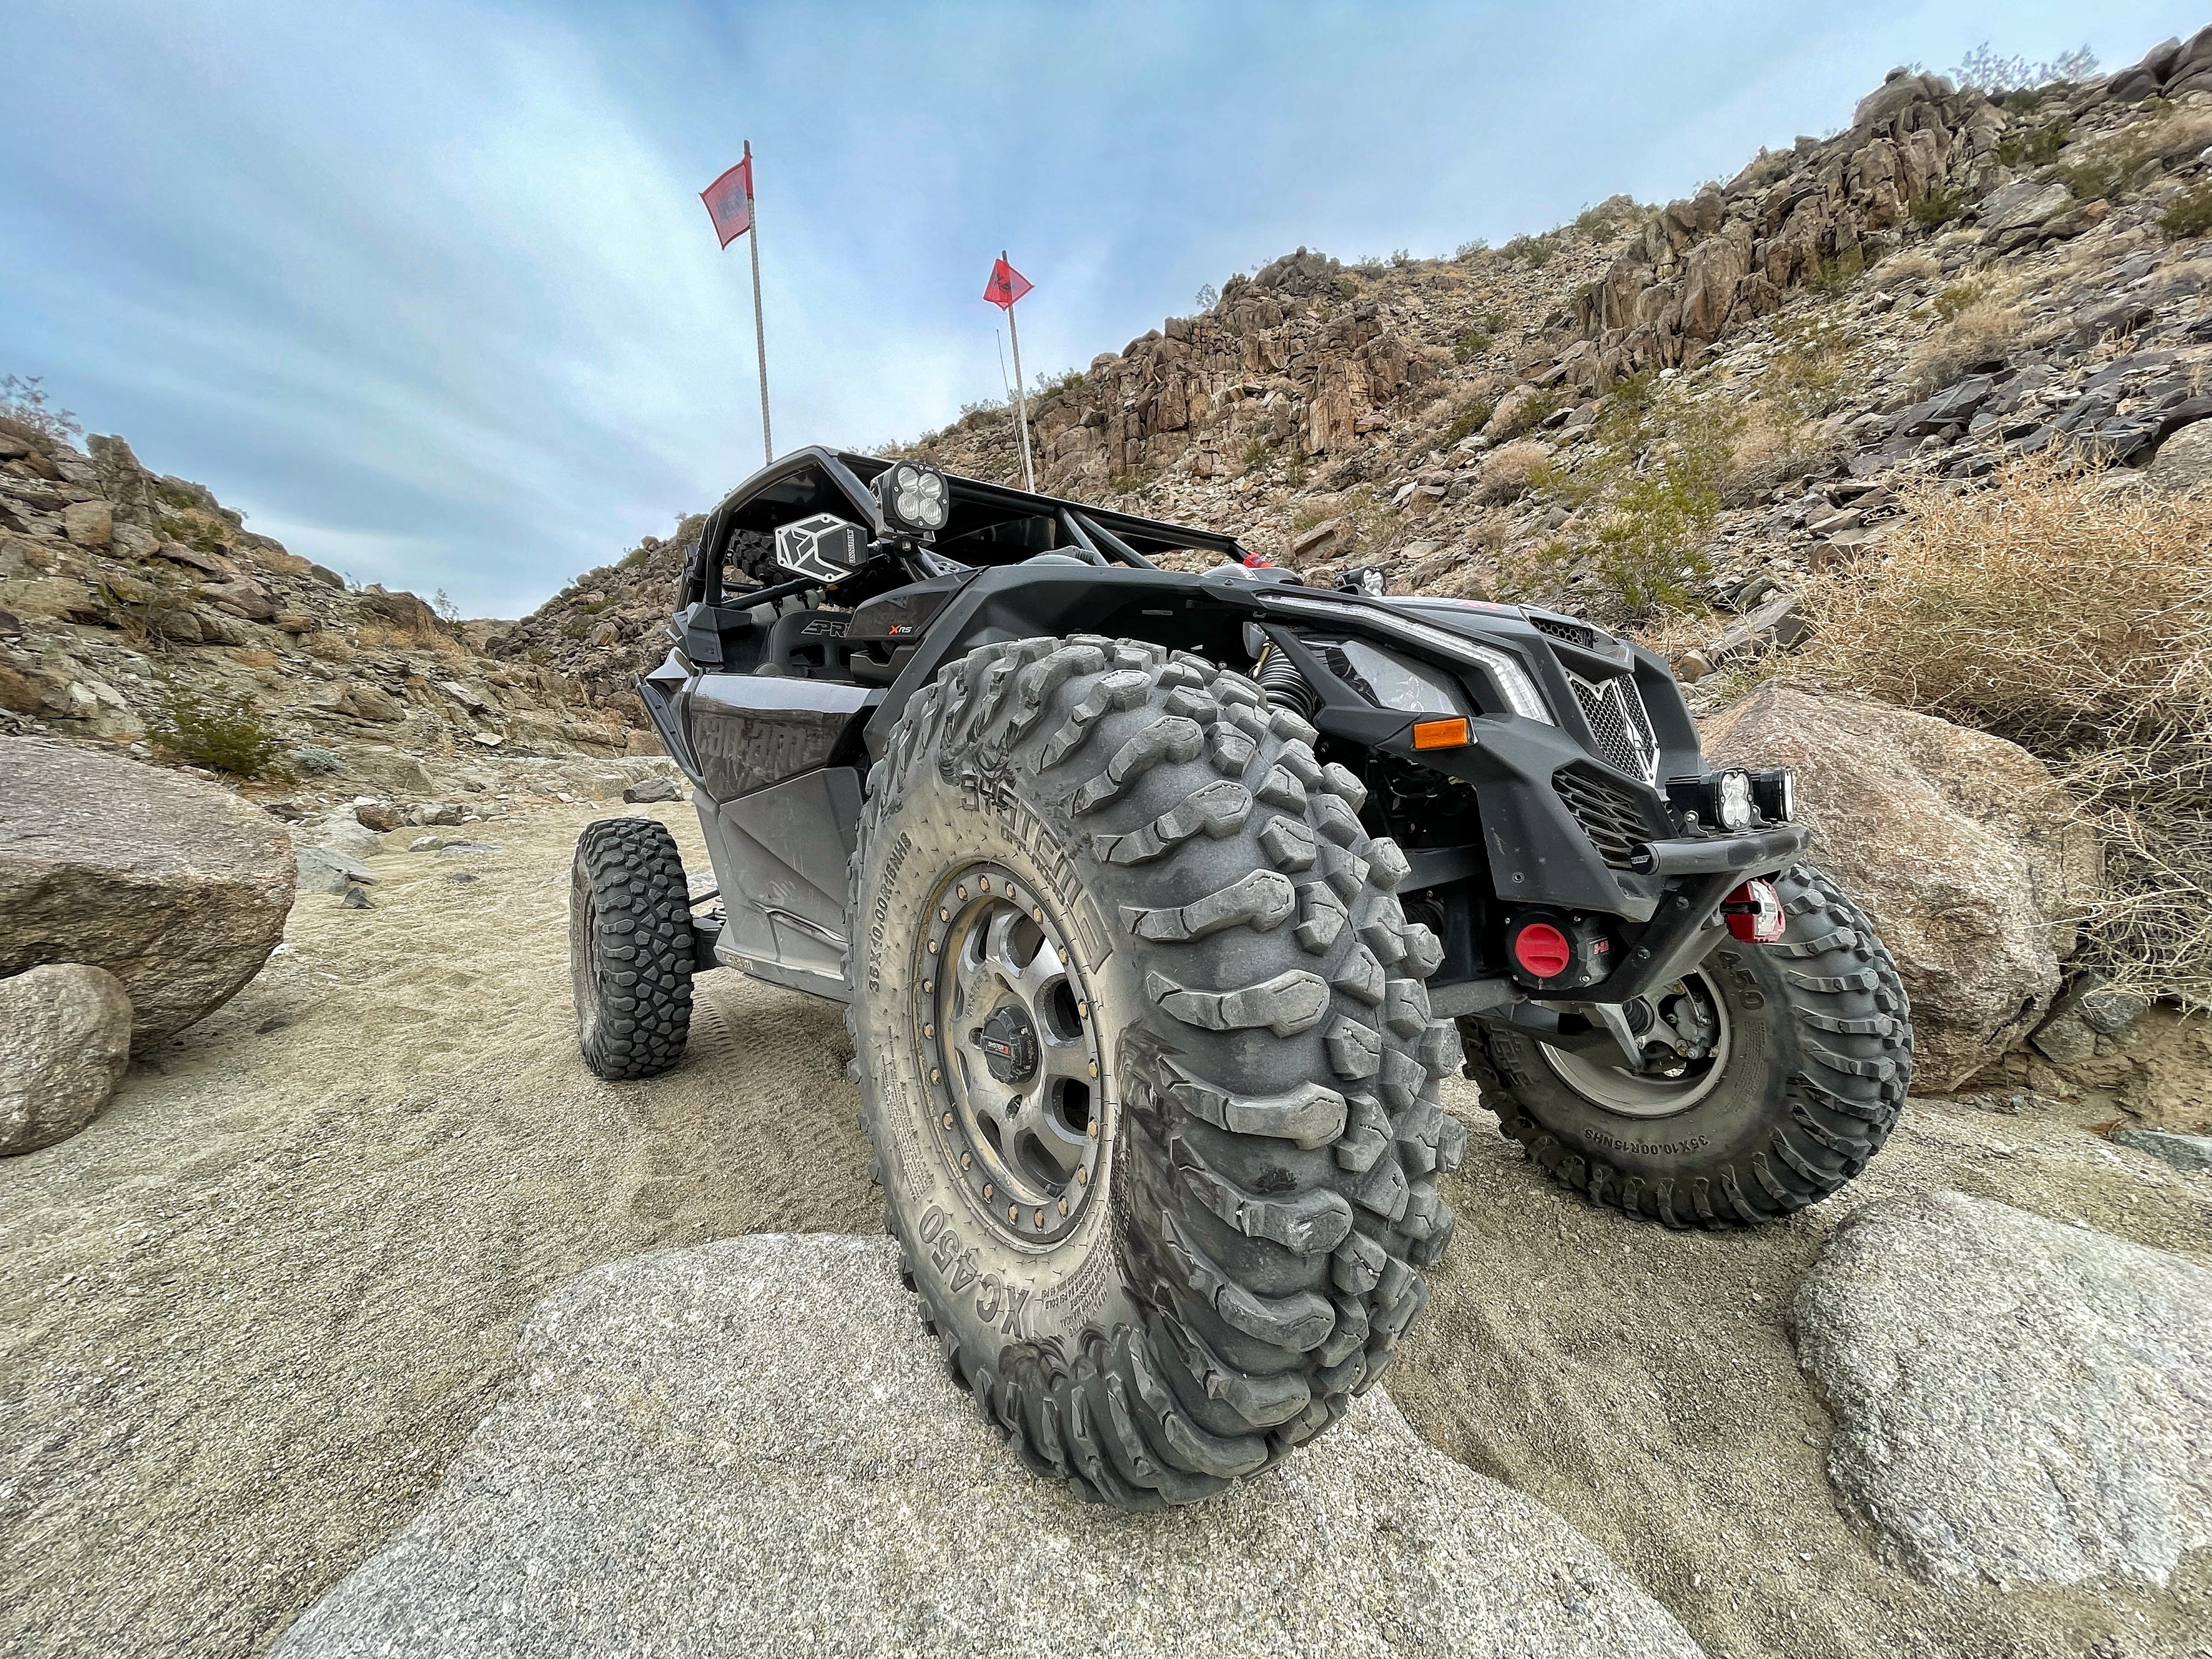 Vehículo side-by-side Can-Am personalizado negro cuesta abajo con la rueda delantera derecha sobre una roca